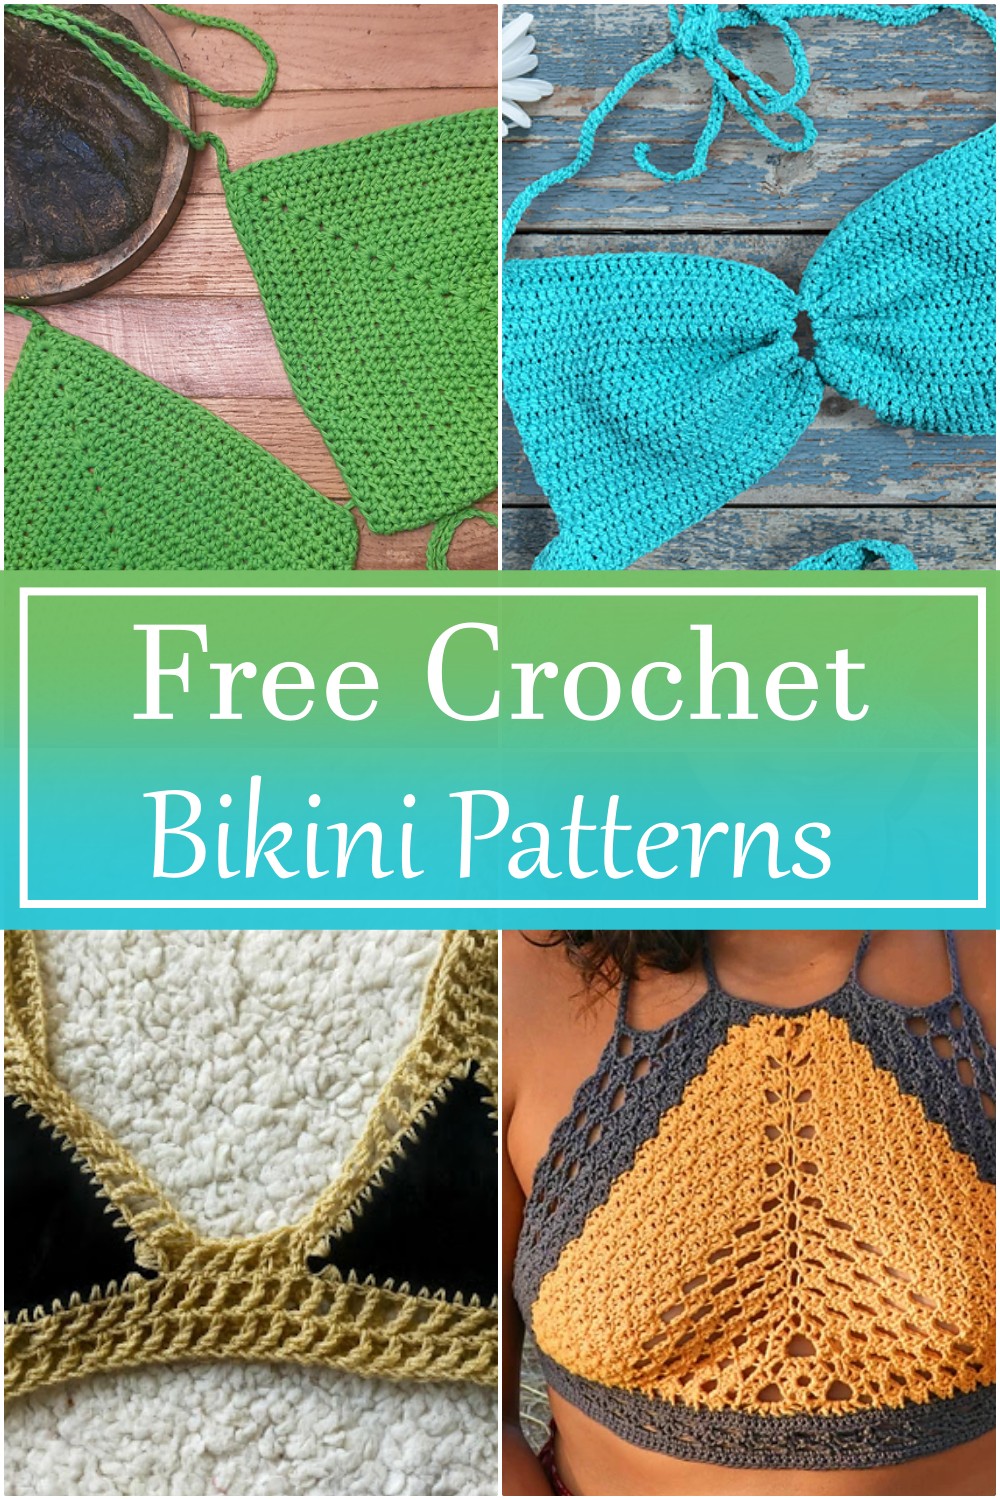 8 Free Crochet Bikini Patterns